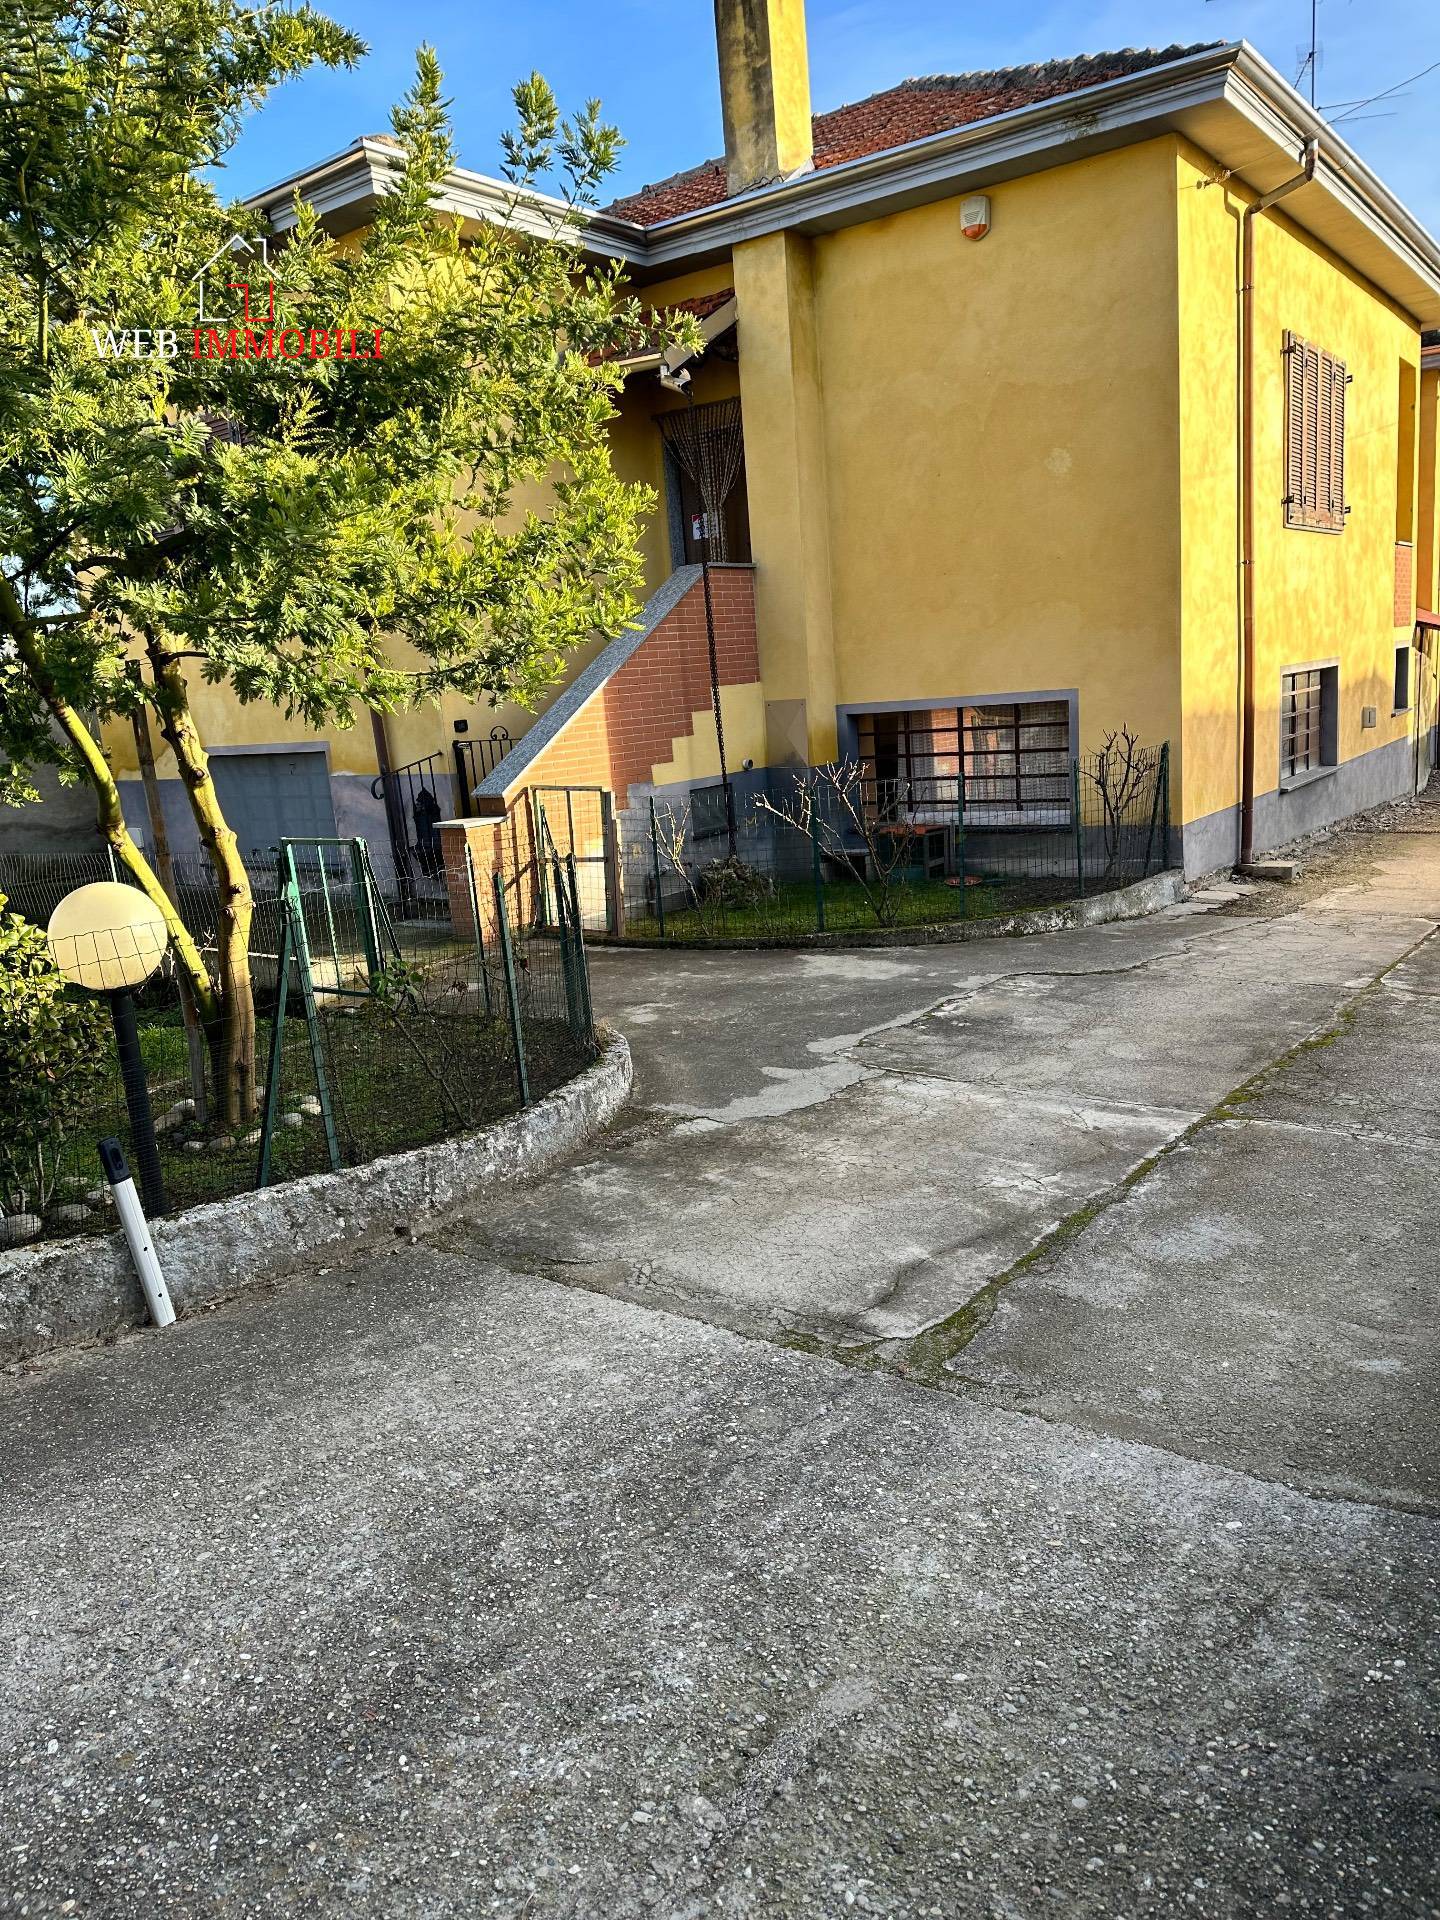 Villa in vendita a Vigevano, 4 locali, prezzo € 170.000 | PortaleAgenzieImmobiliari.it